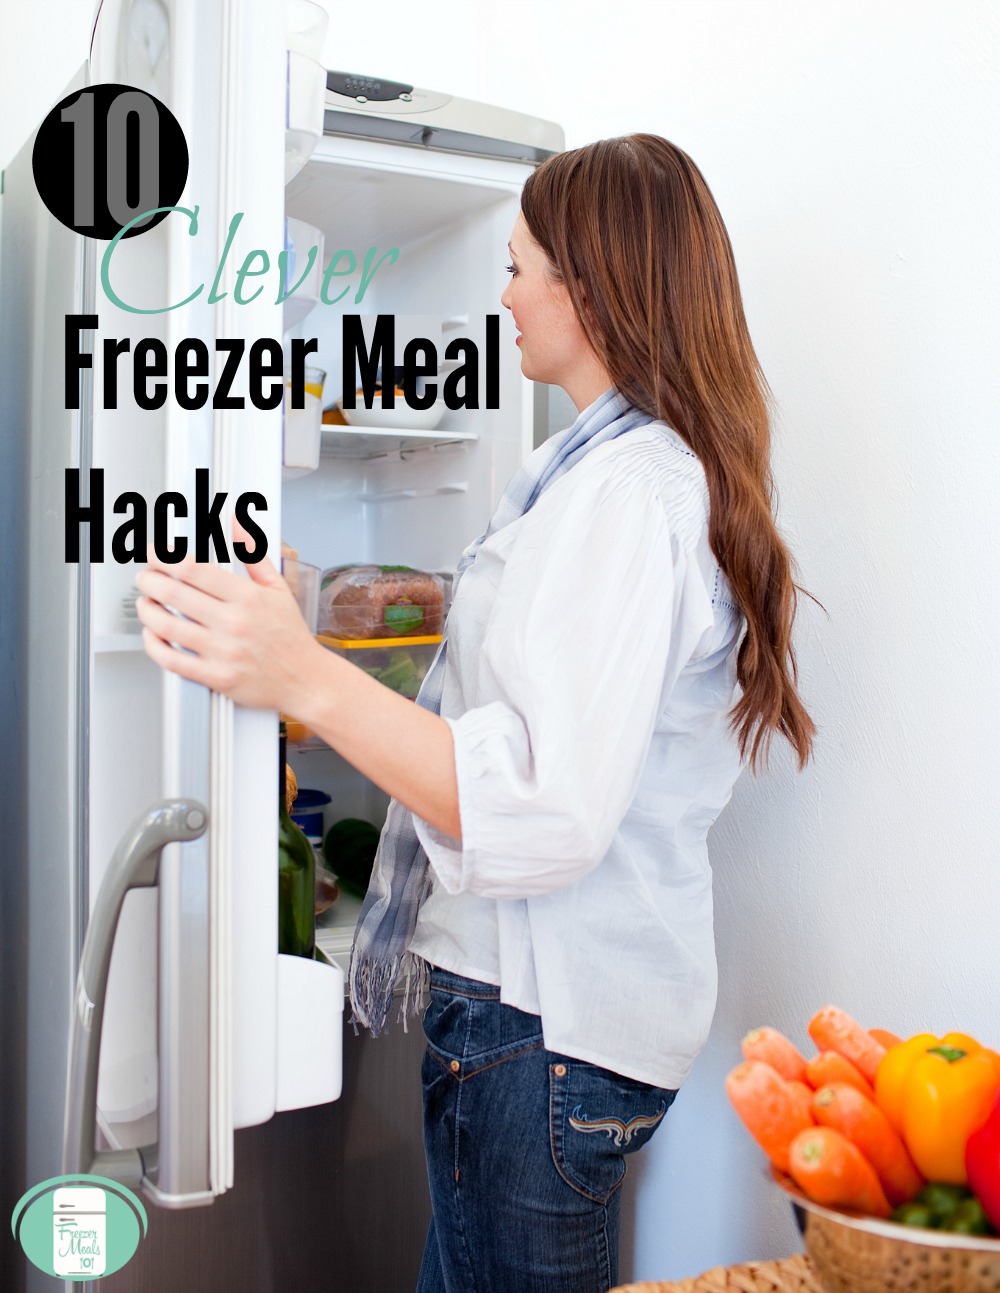 10 Clever Freezer Meal Hacks